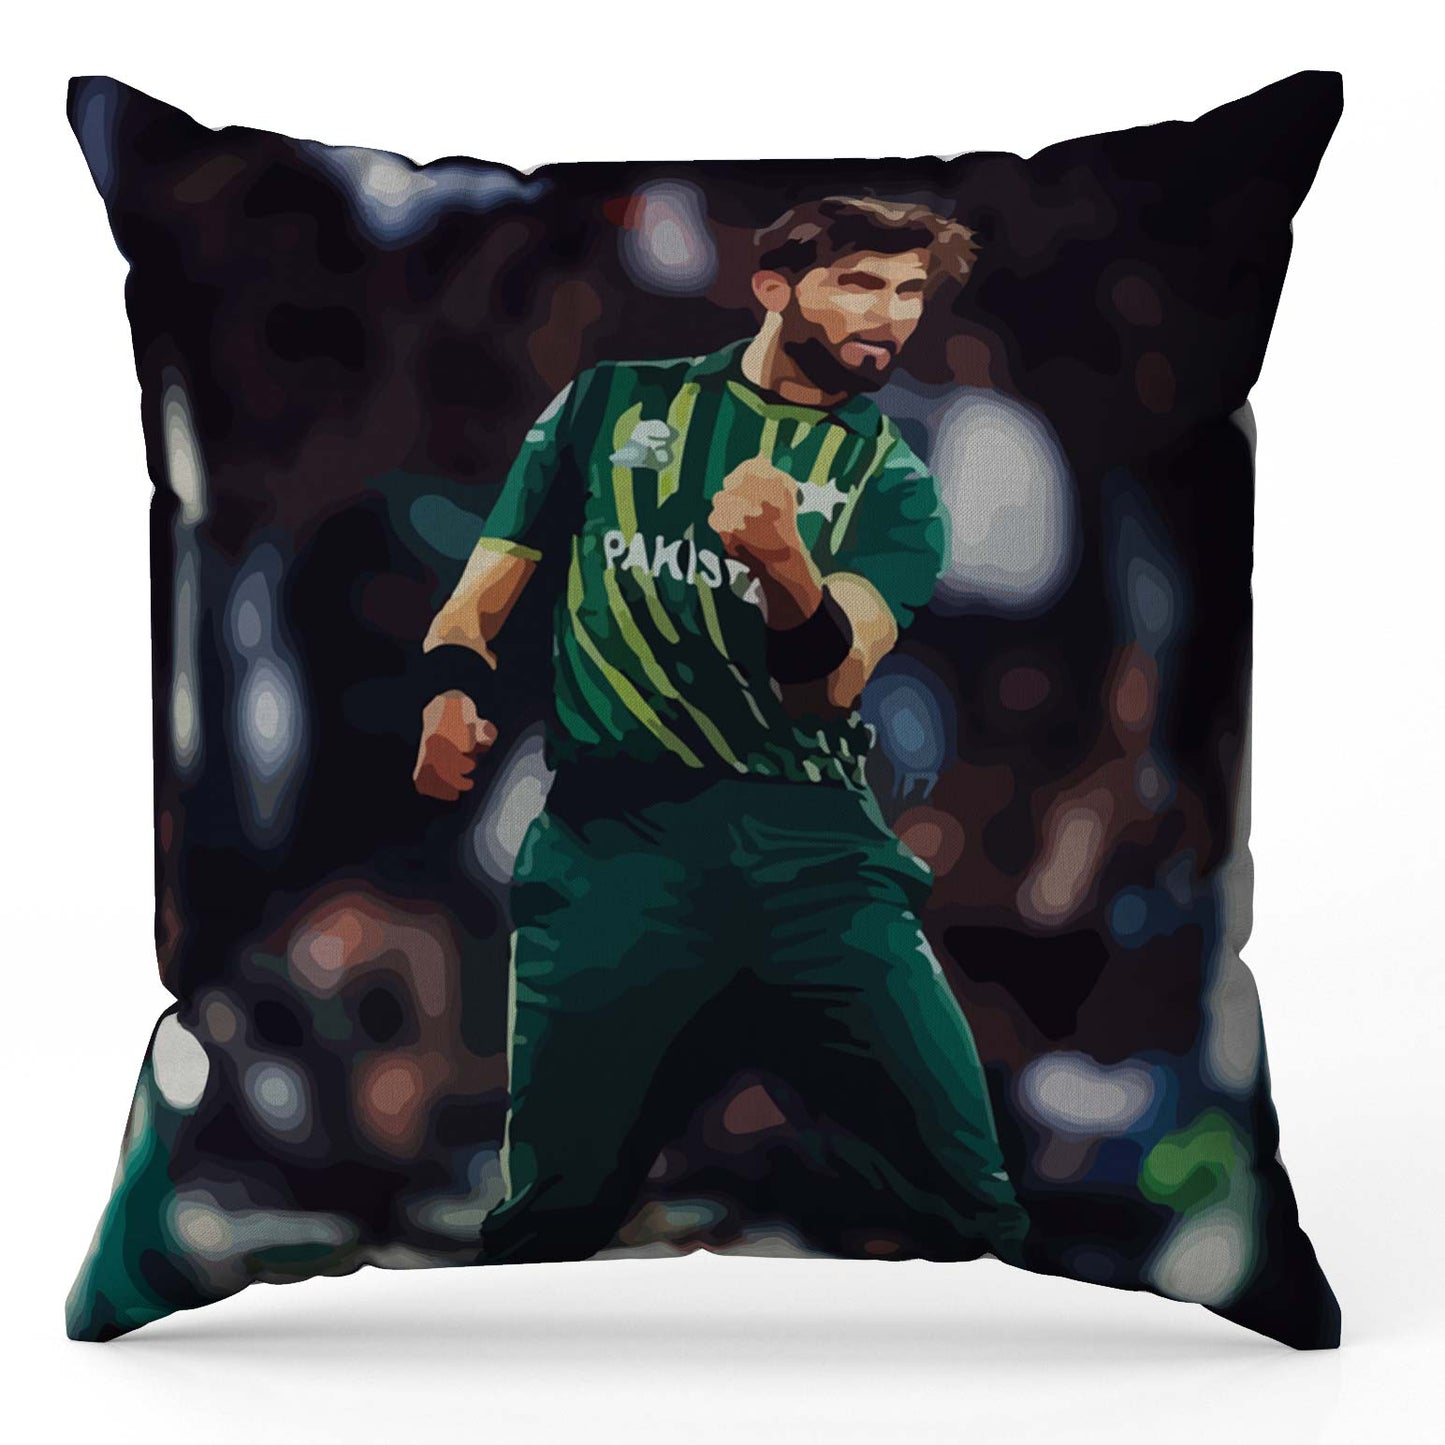 Shaheen Shah Afridi Cushion Cover Trendy Home